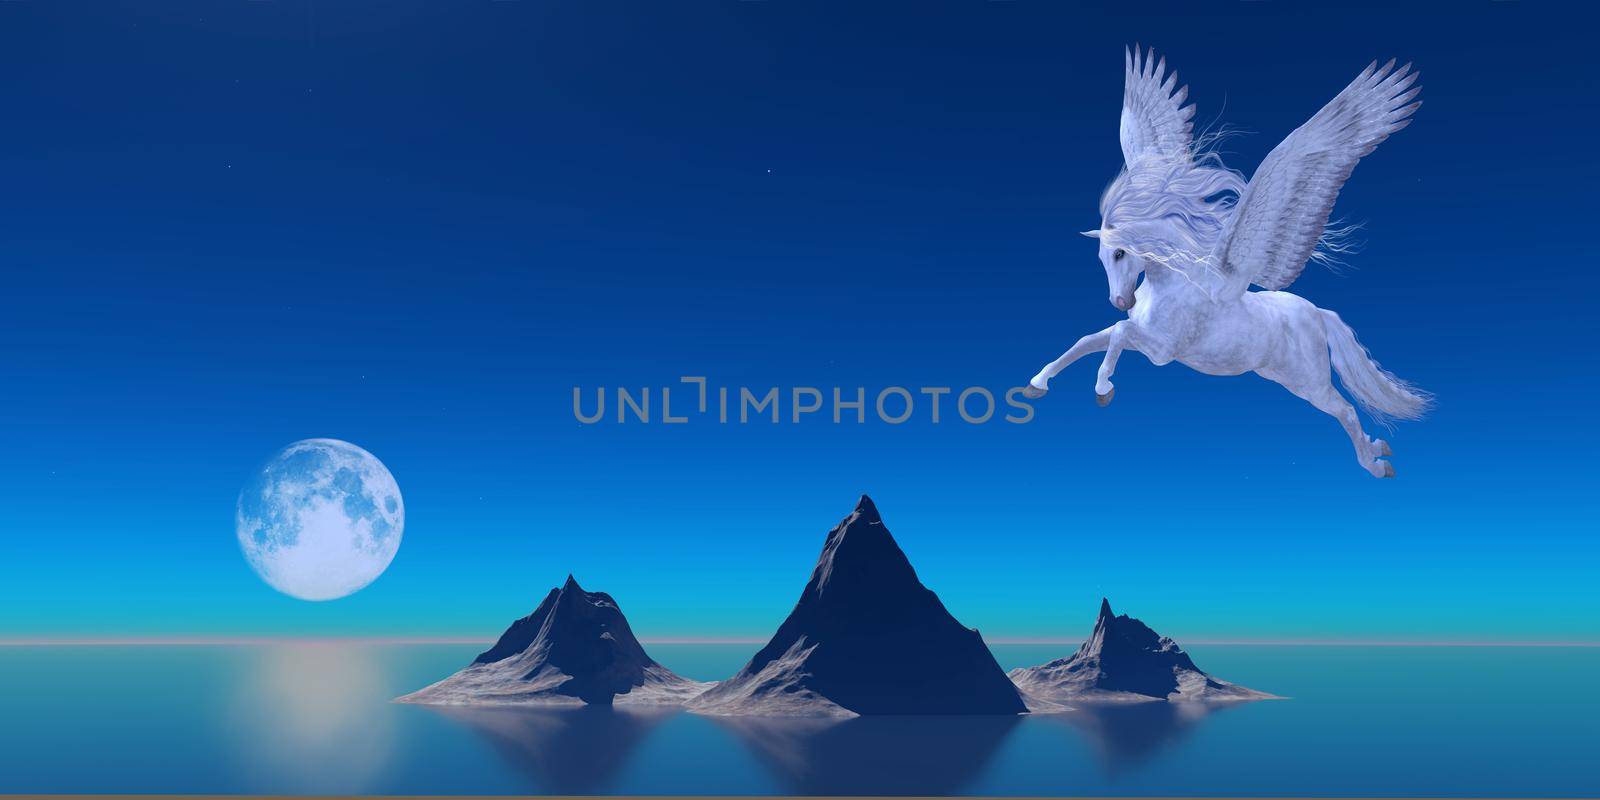 Pegasus by Ocean by Catmando